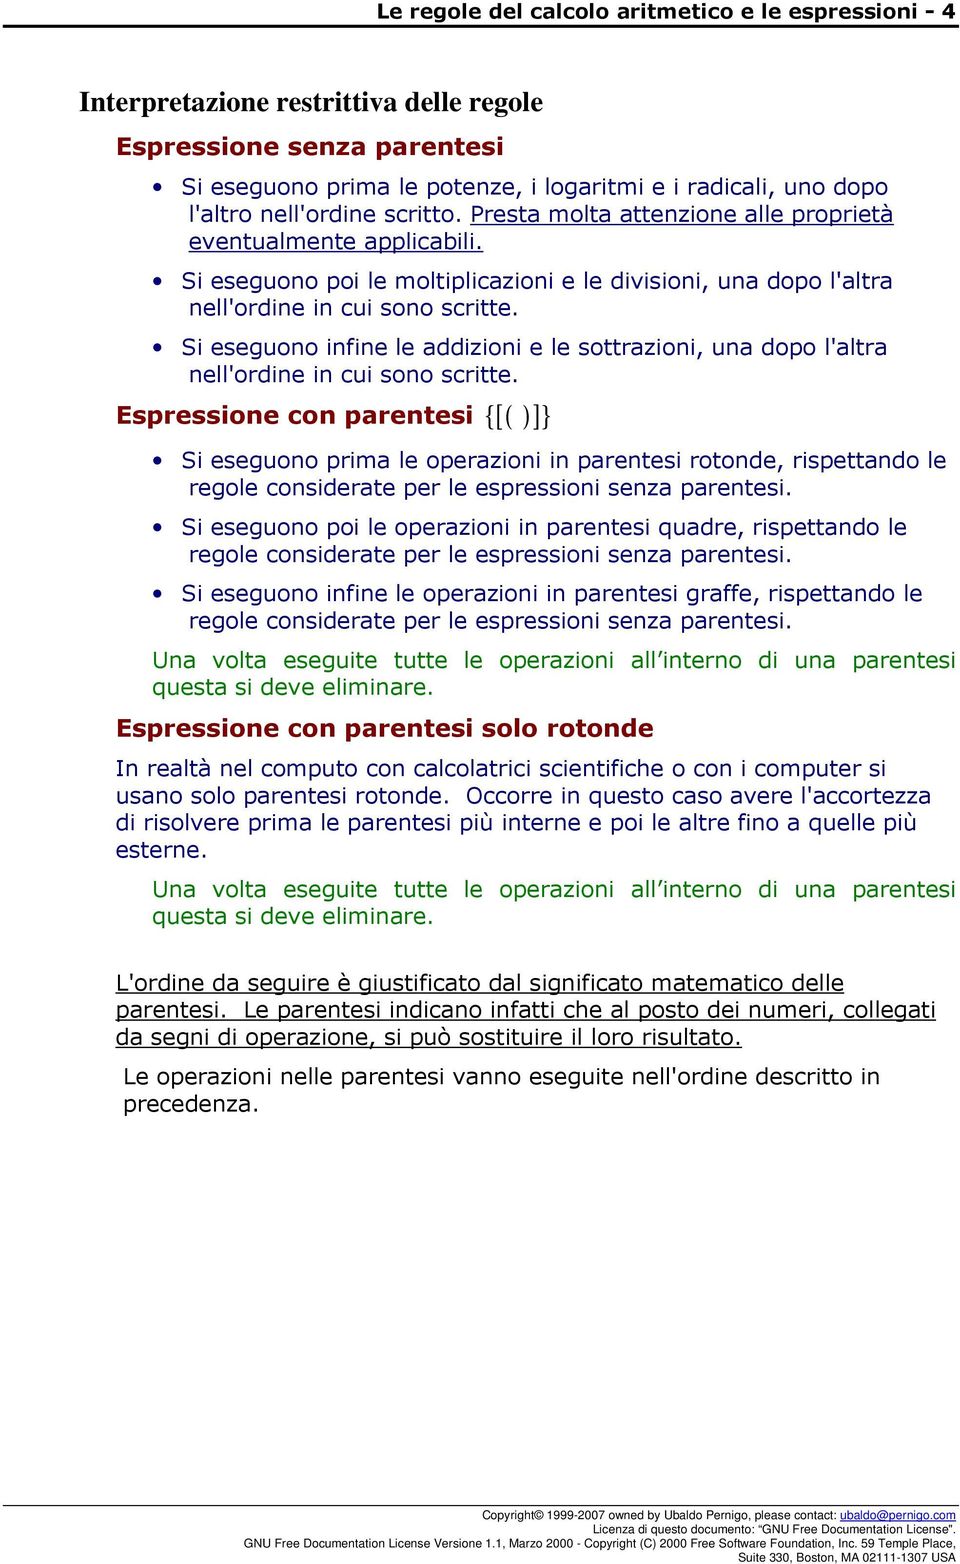 Le Regole Del Calcolo Aritmetico E Le Espressioni Arithmetic Expression Rules Pdf Free Download